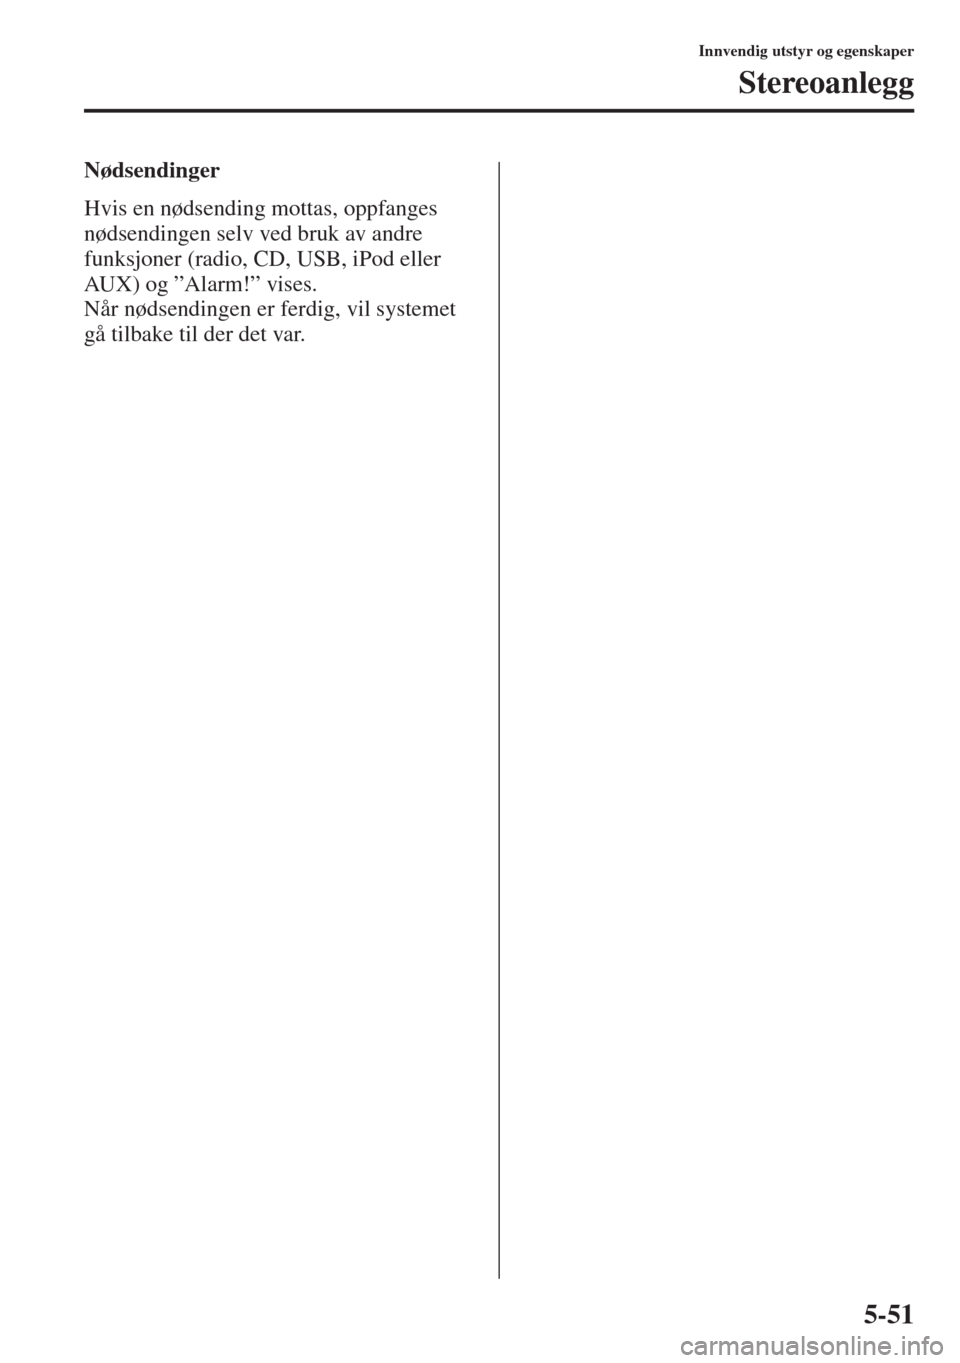 MAZDA MODEL CX-5 2013  Brukerhåndbok (in Norwegian) 5-51
Innvendig utstyr og egenskaper
Stereoanlegg
Nødsendinger
Hvis en nødsending mottas, oppfanges 
nødsendingen selv ved bruk av andre 
funksjoner (radio, CD, USB, iPod eller 
AUX) og ”Alarm!”